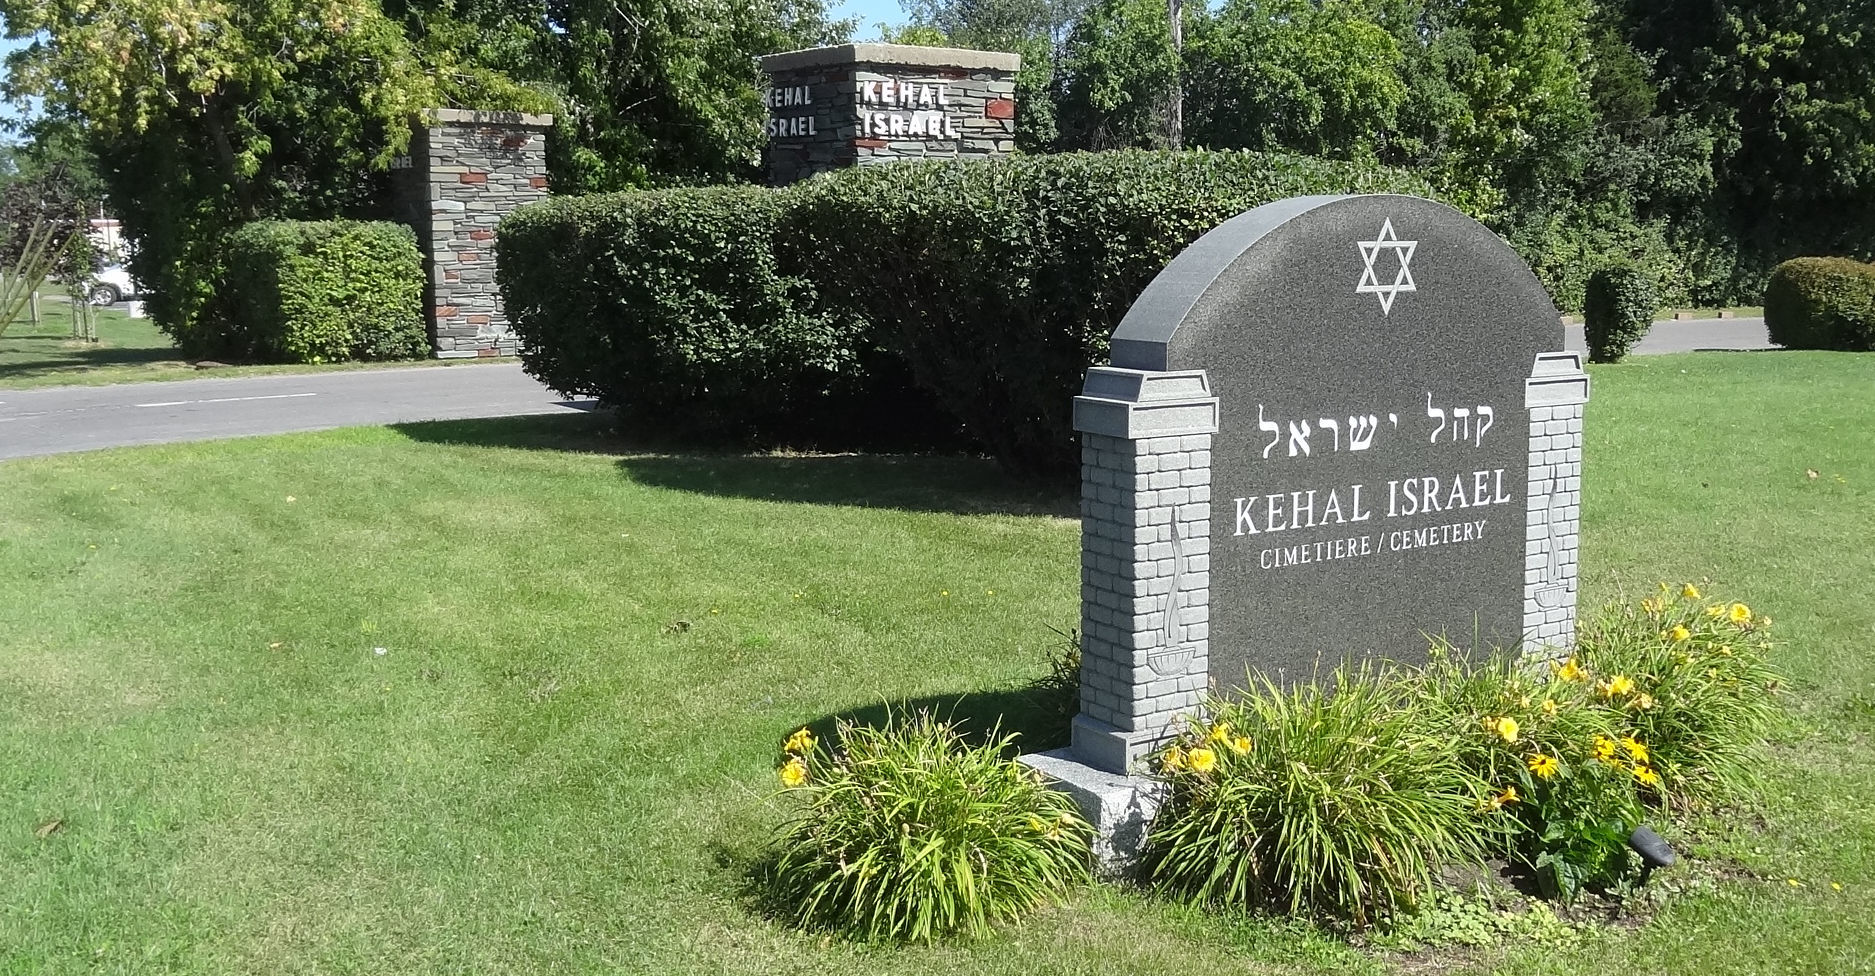 Kehal Israel Memorial Park - Entrance